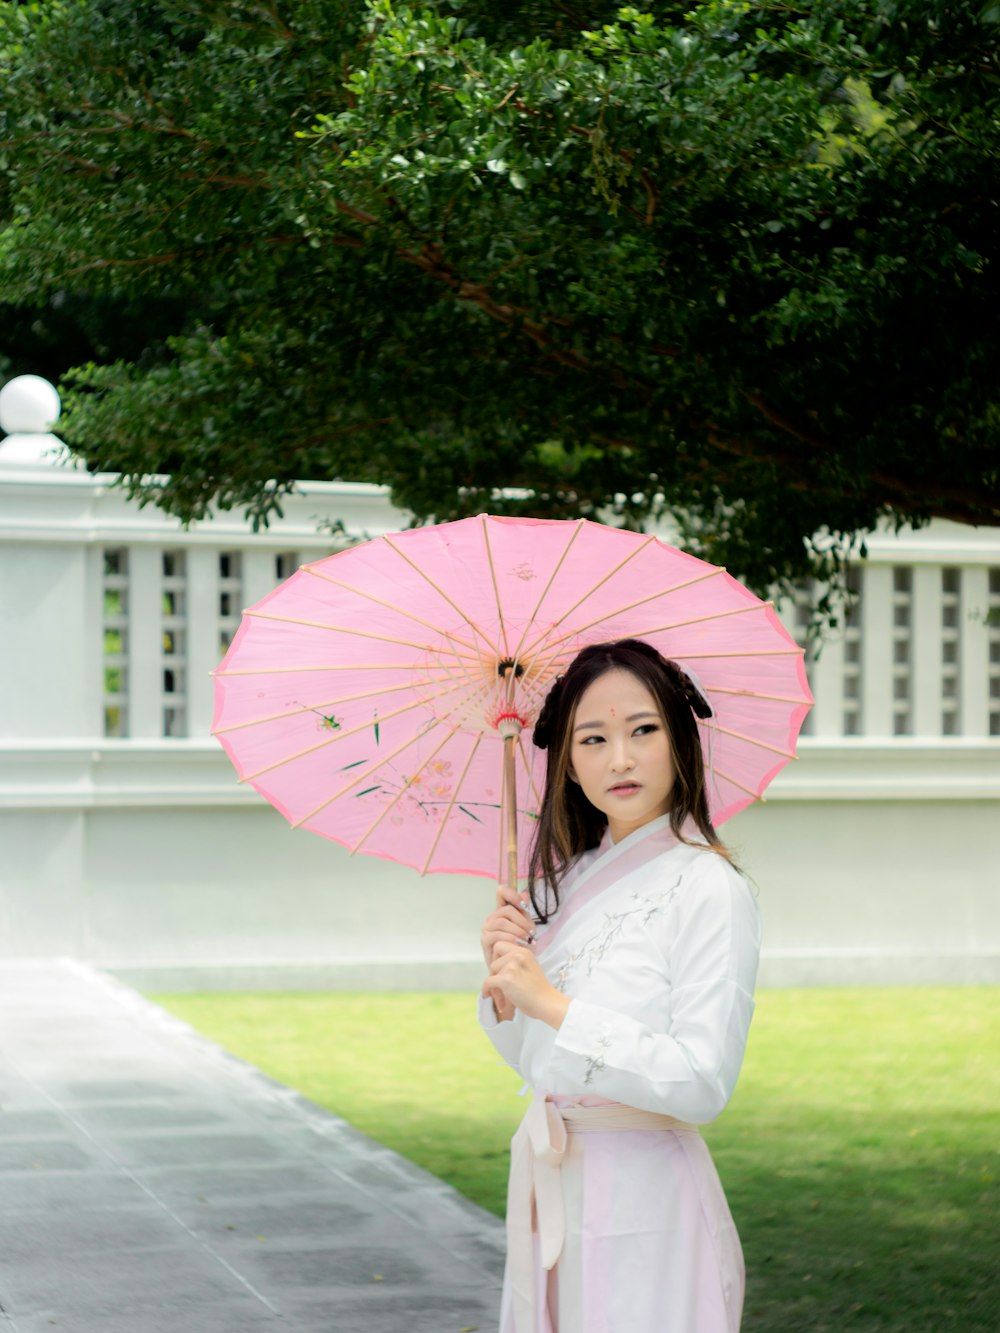 분홍색 우산을 들고 흰 드레스를 입은 여자